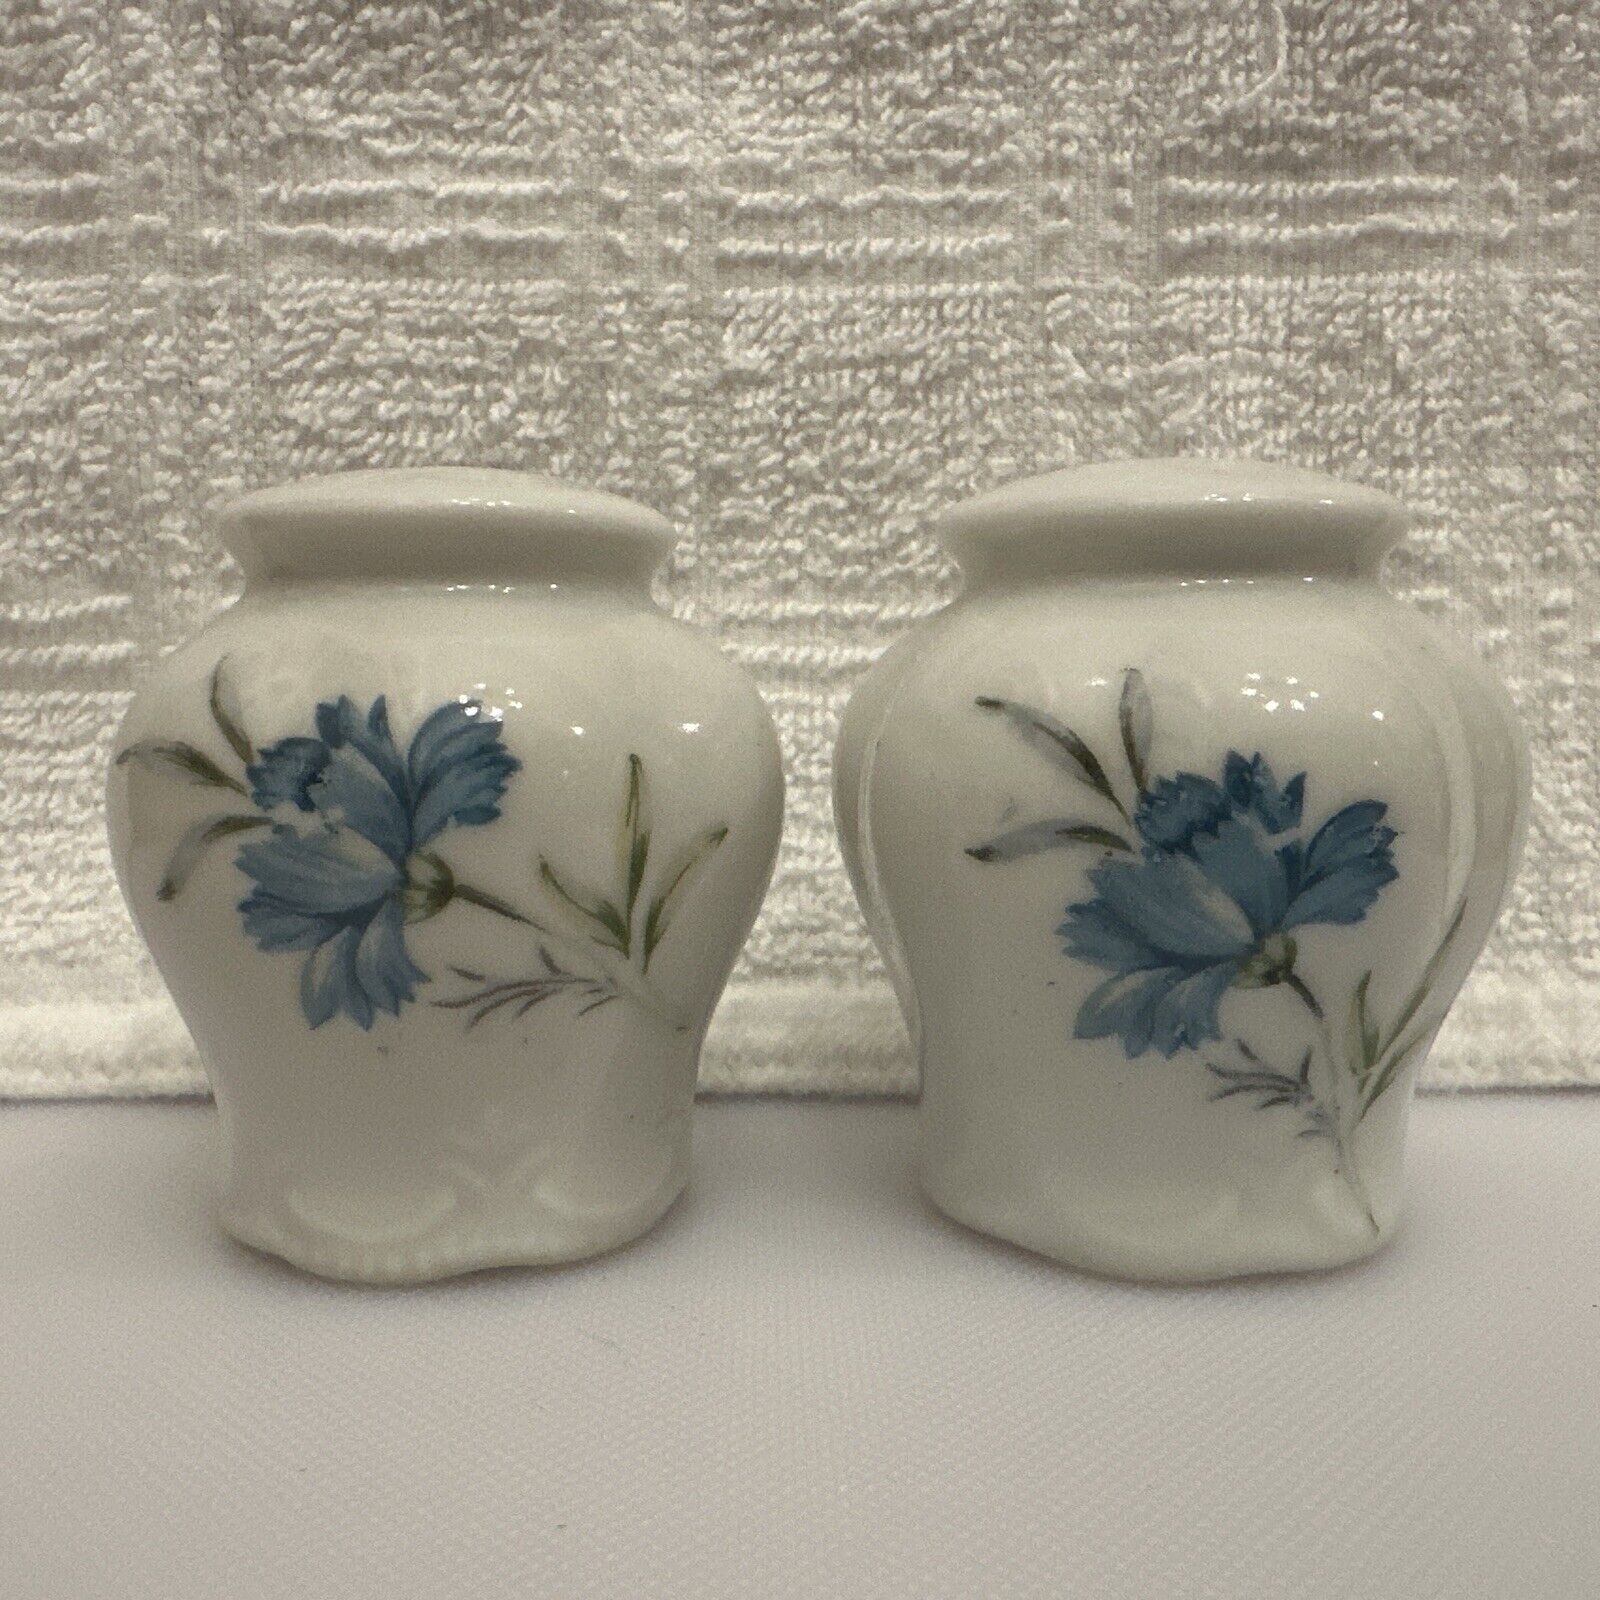 INARCO Japan 2.5” Ceramic Blue Floral Salt & Pepper Shakers E-4775 Vintage